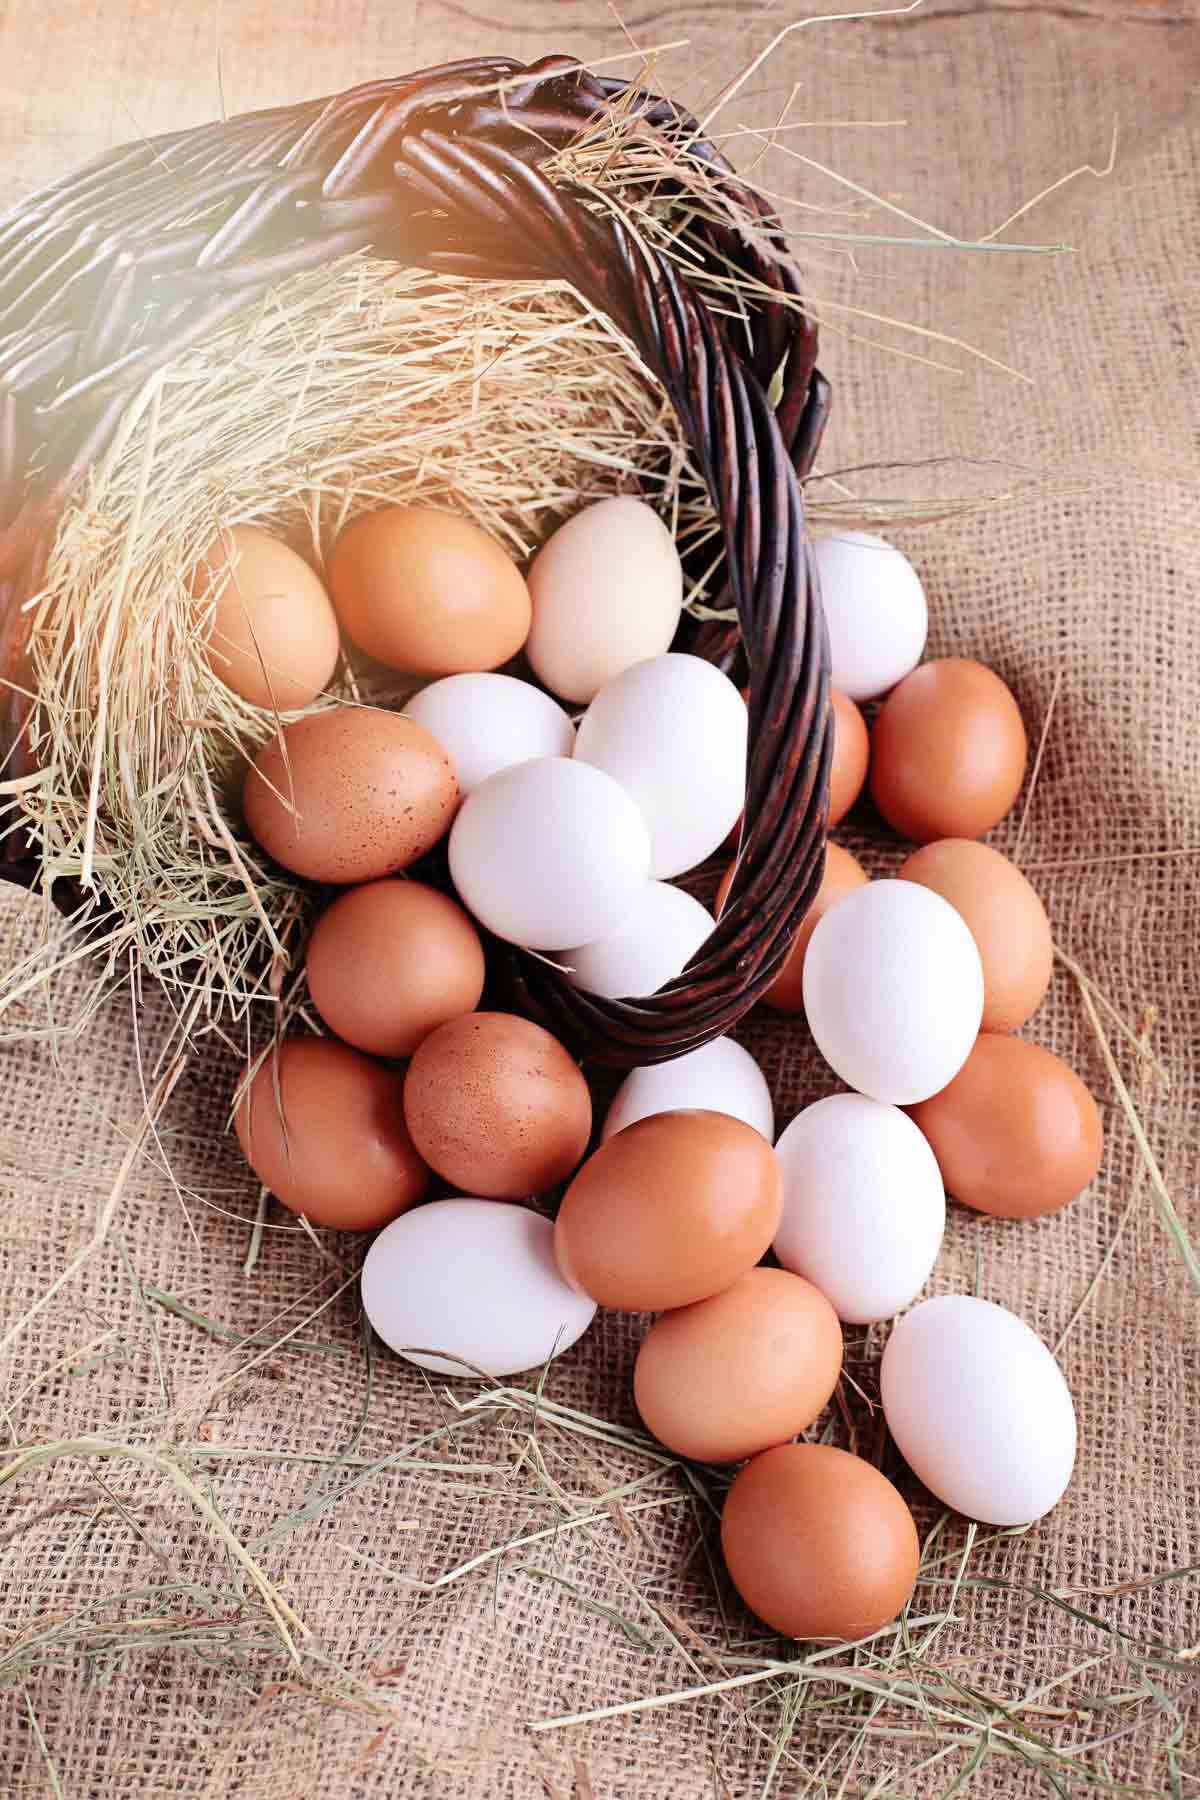 Farm fresh eggs in a basket.